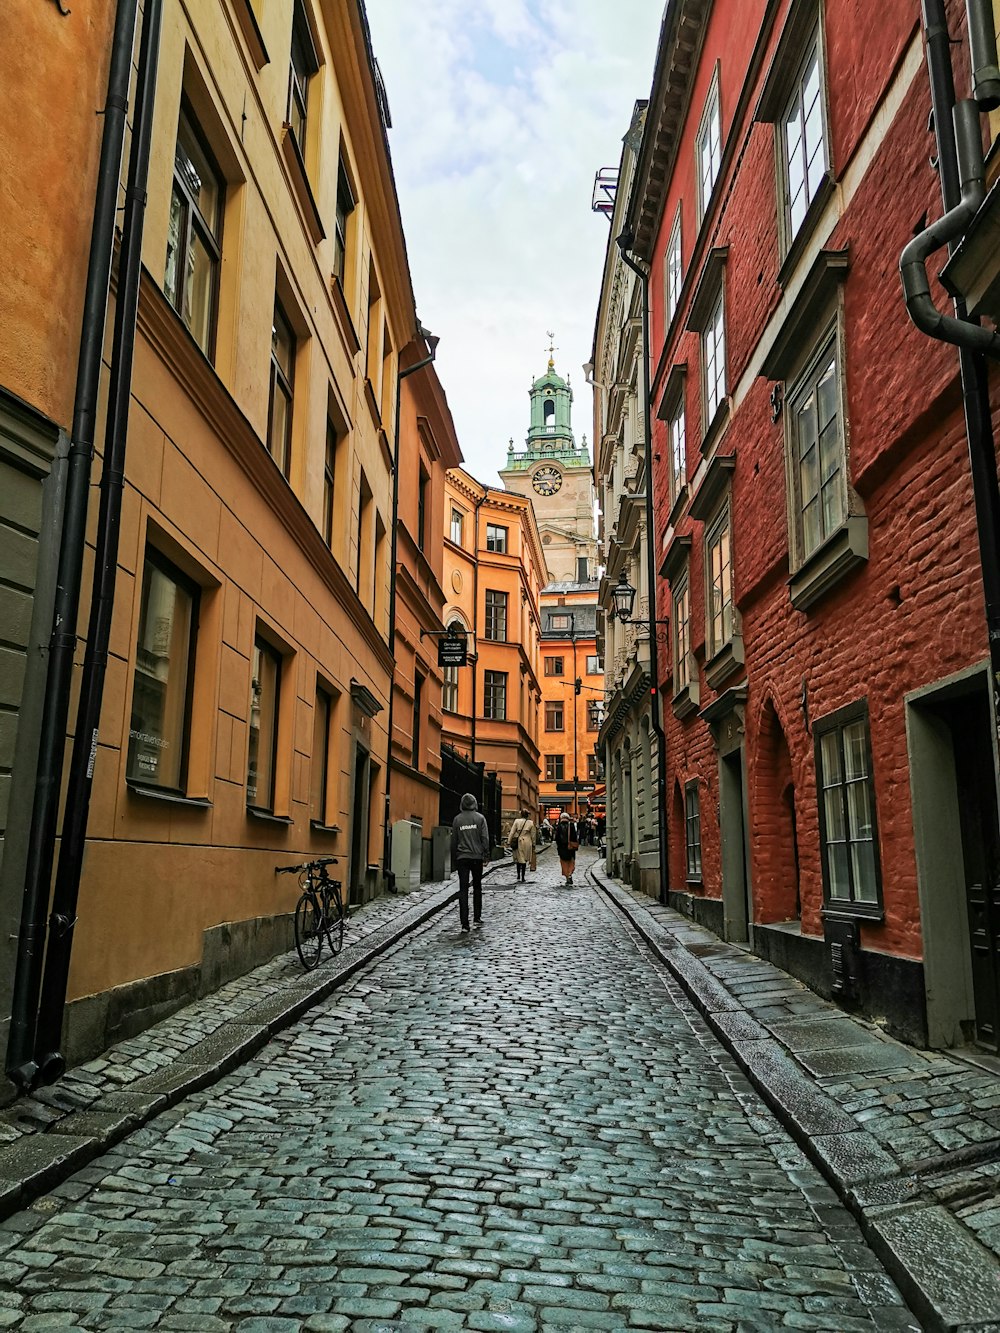 two people walking down a cobblestone street